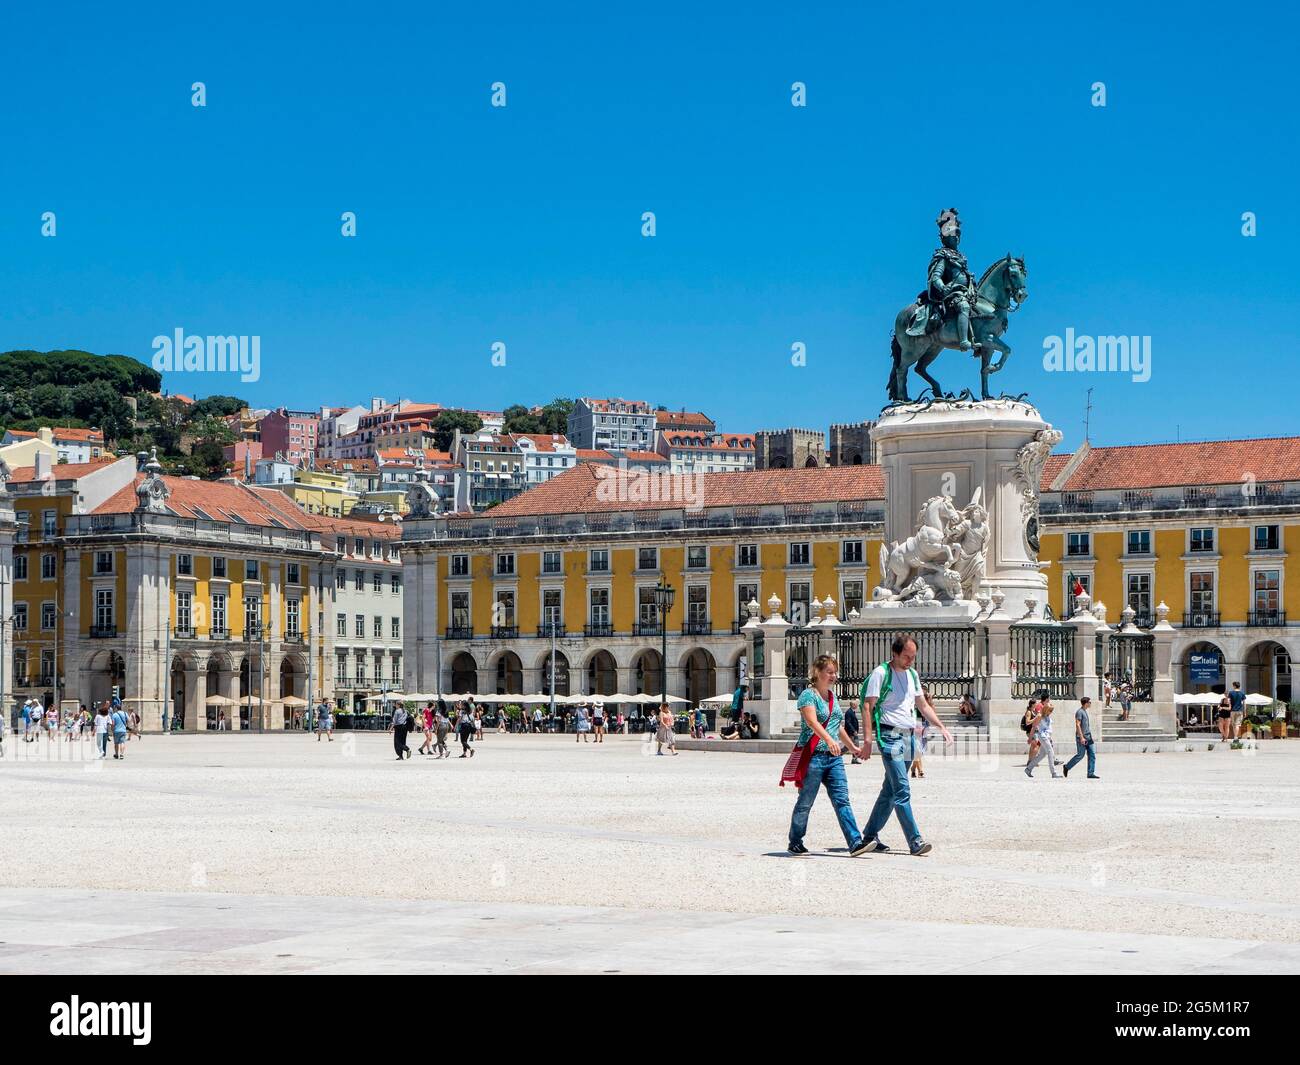 Place commerciale, Praça do Comercio, avec ministère de la Justice, statue équestre du roi José I, Baixa, Lisbonne, Portugal, Europe Banque D'Images